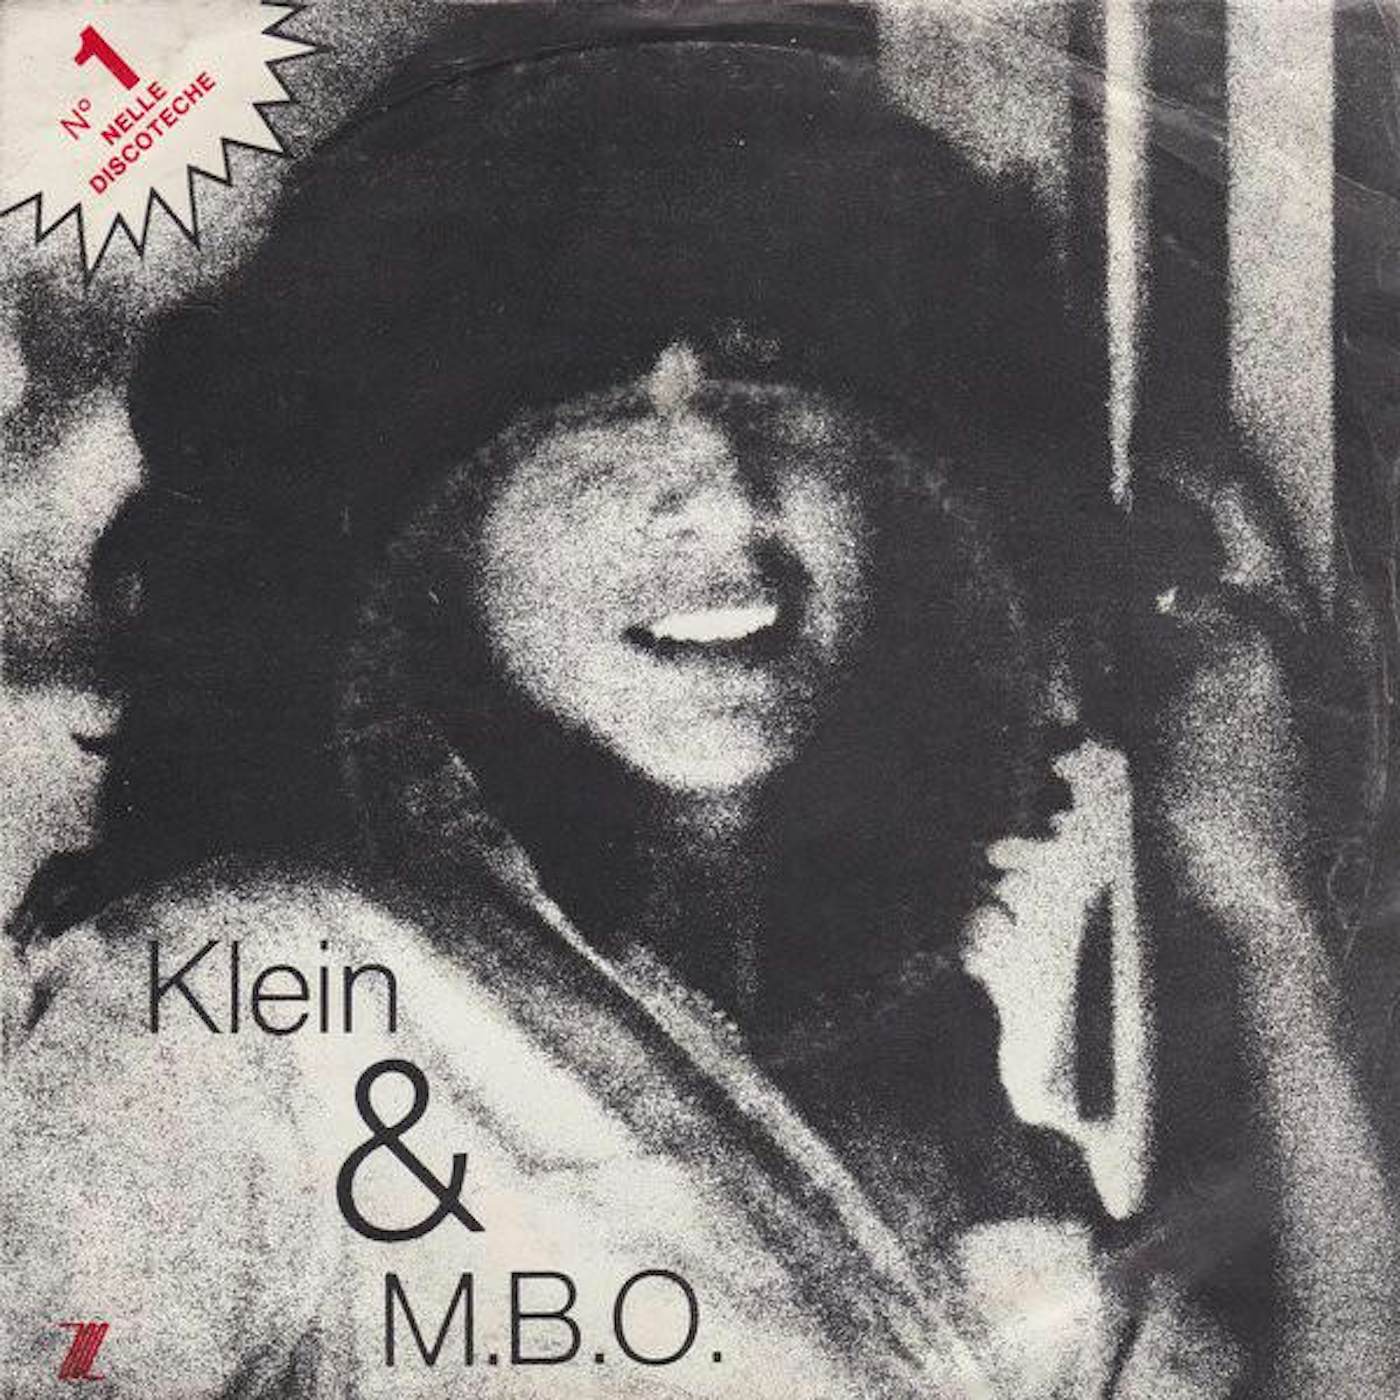 Klein & M.B.O. DIRTY TALK CD